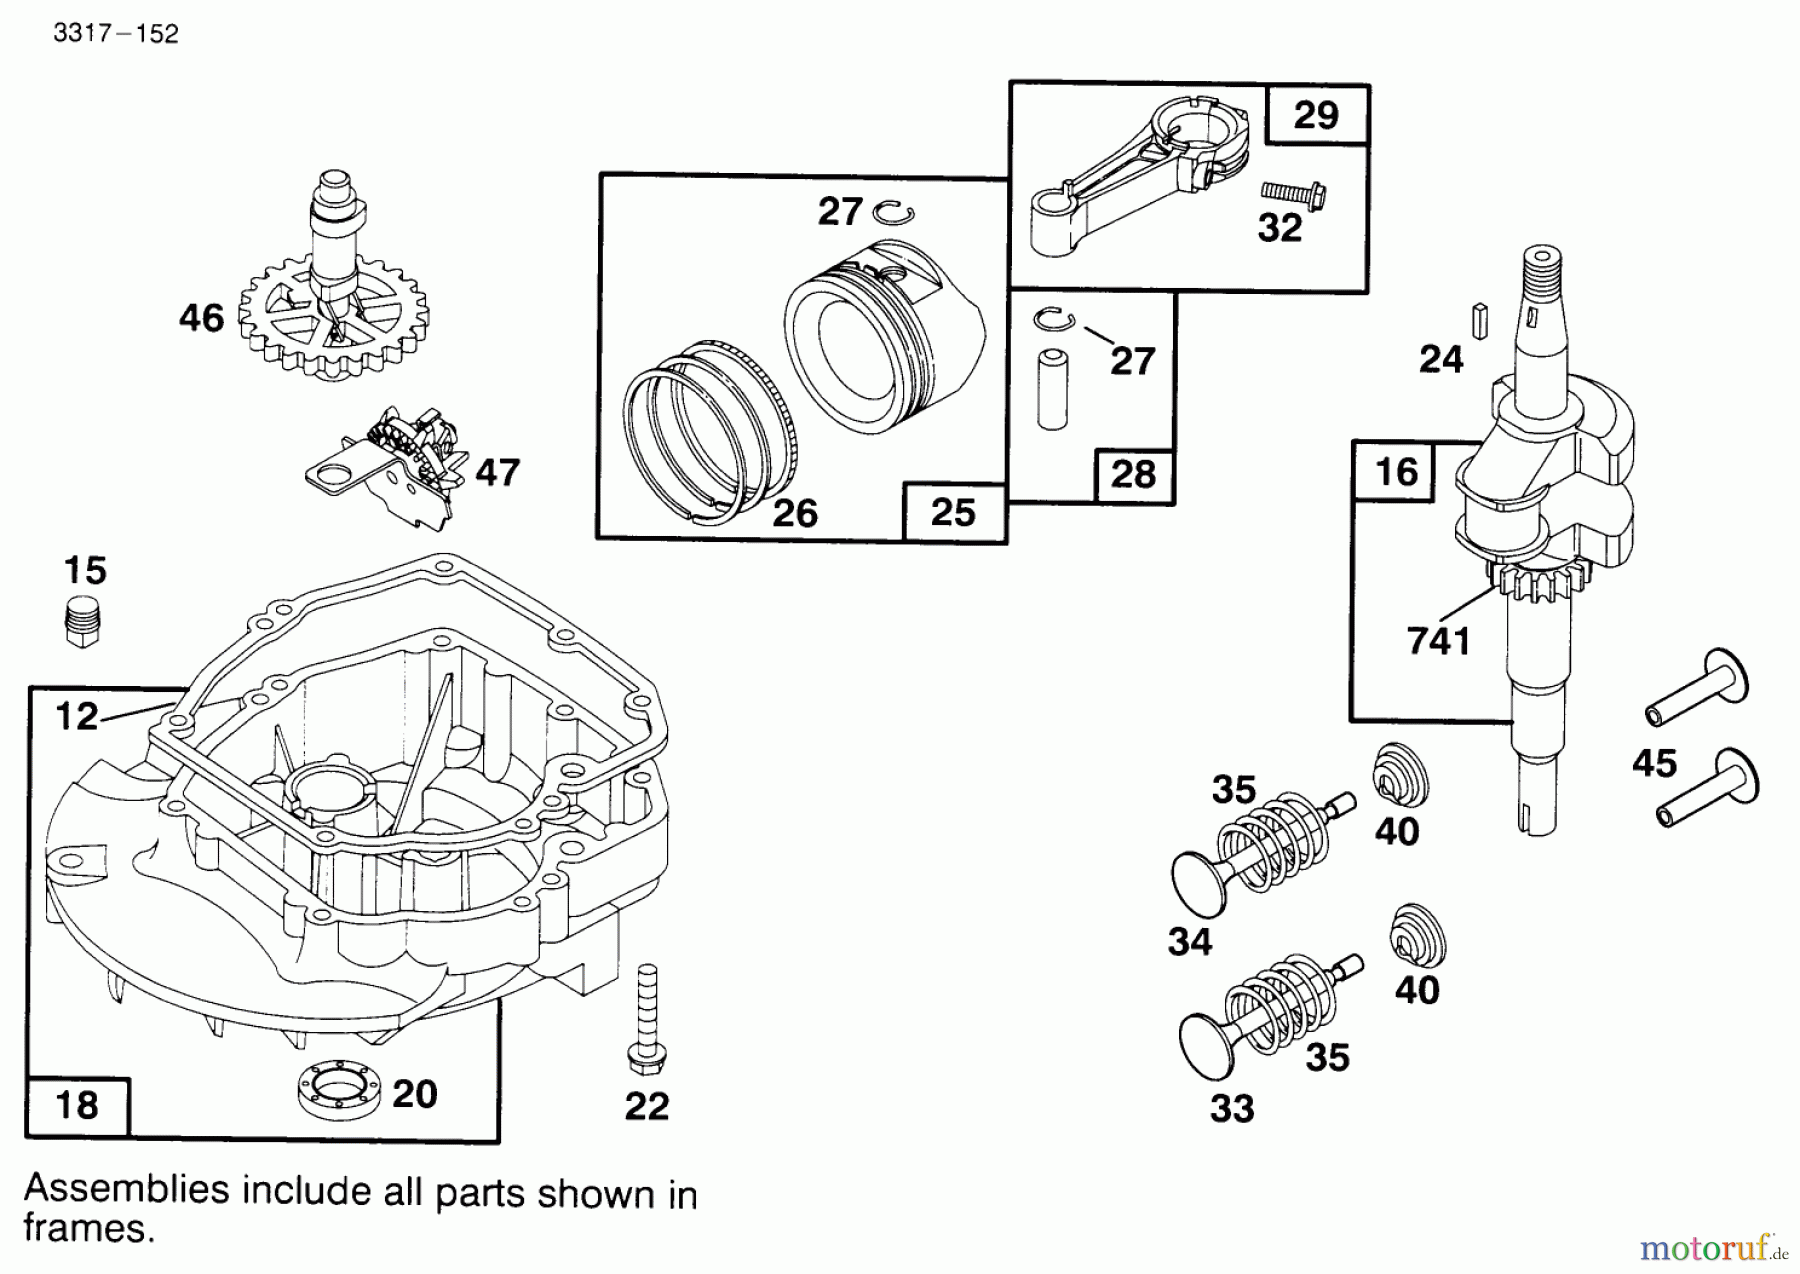  Toro Neu Mowers, Walk-Behind Seite 1 20441 - Toro Lawnmower, 1995 (5900001-5999999) ENGINE BRIGGS & STRATTON MODEL 127802-0640-01 #2